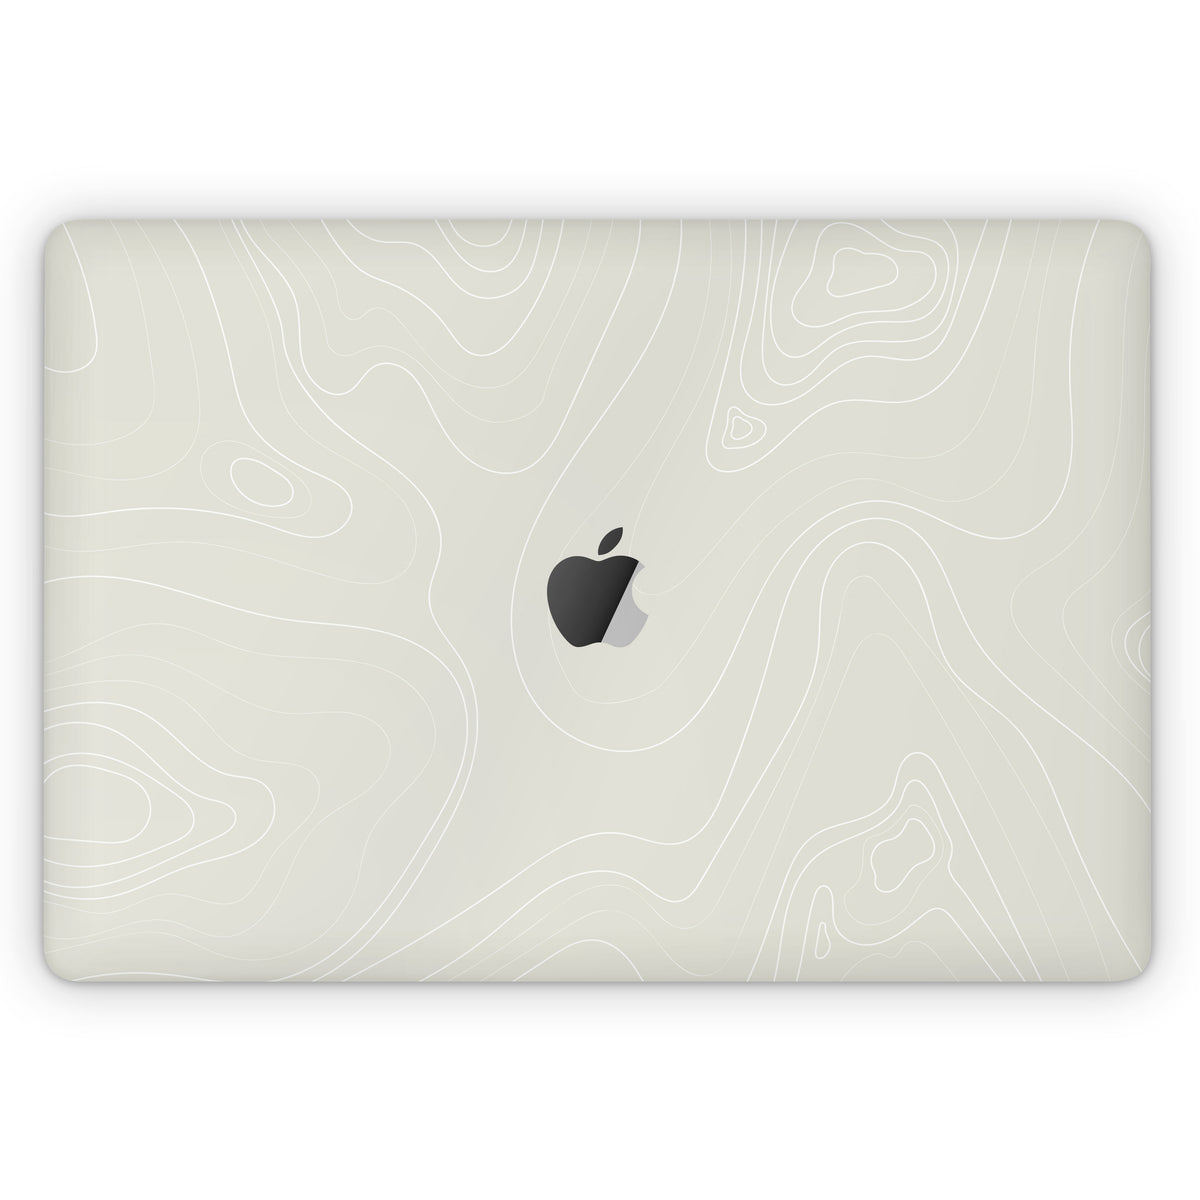 Slate (MacBook Skin)